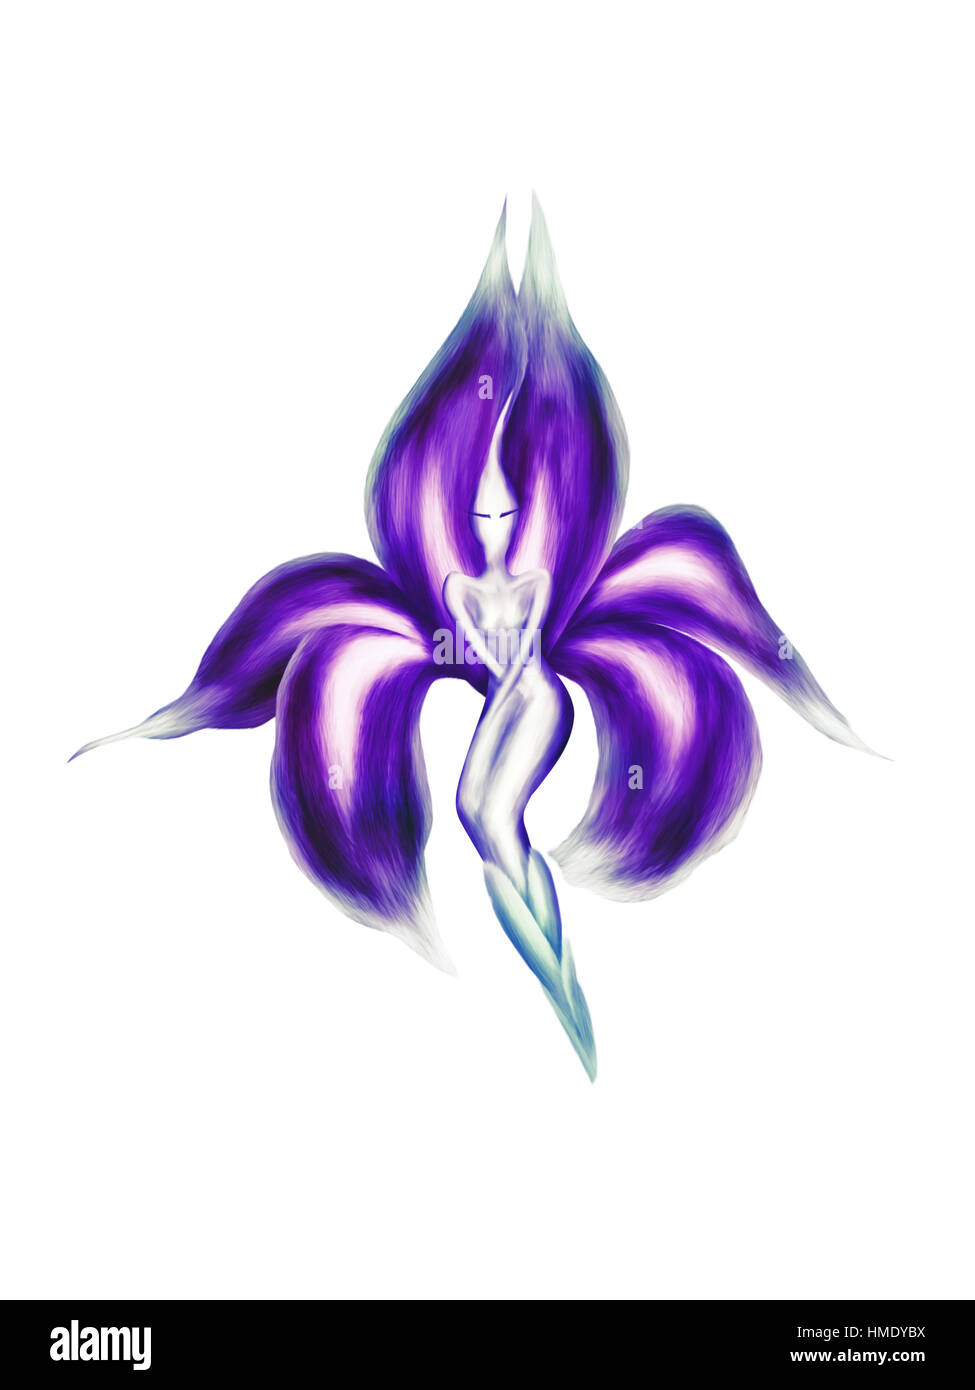 Résumé artistique illustration d'une belle dame iris danse exotique fleur fée avec pétales pourpre isolé sur fond blanc Banque D'Images